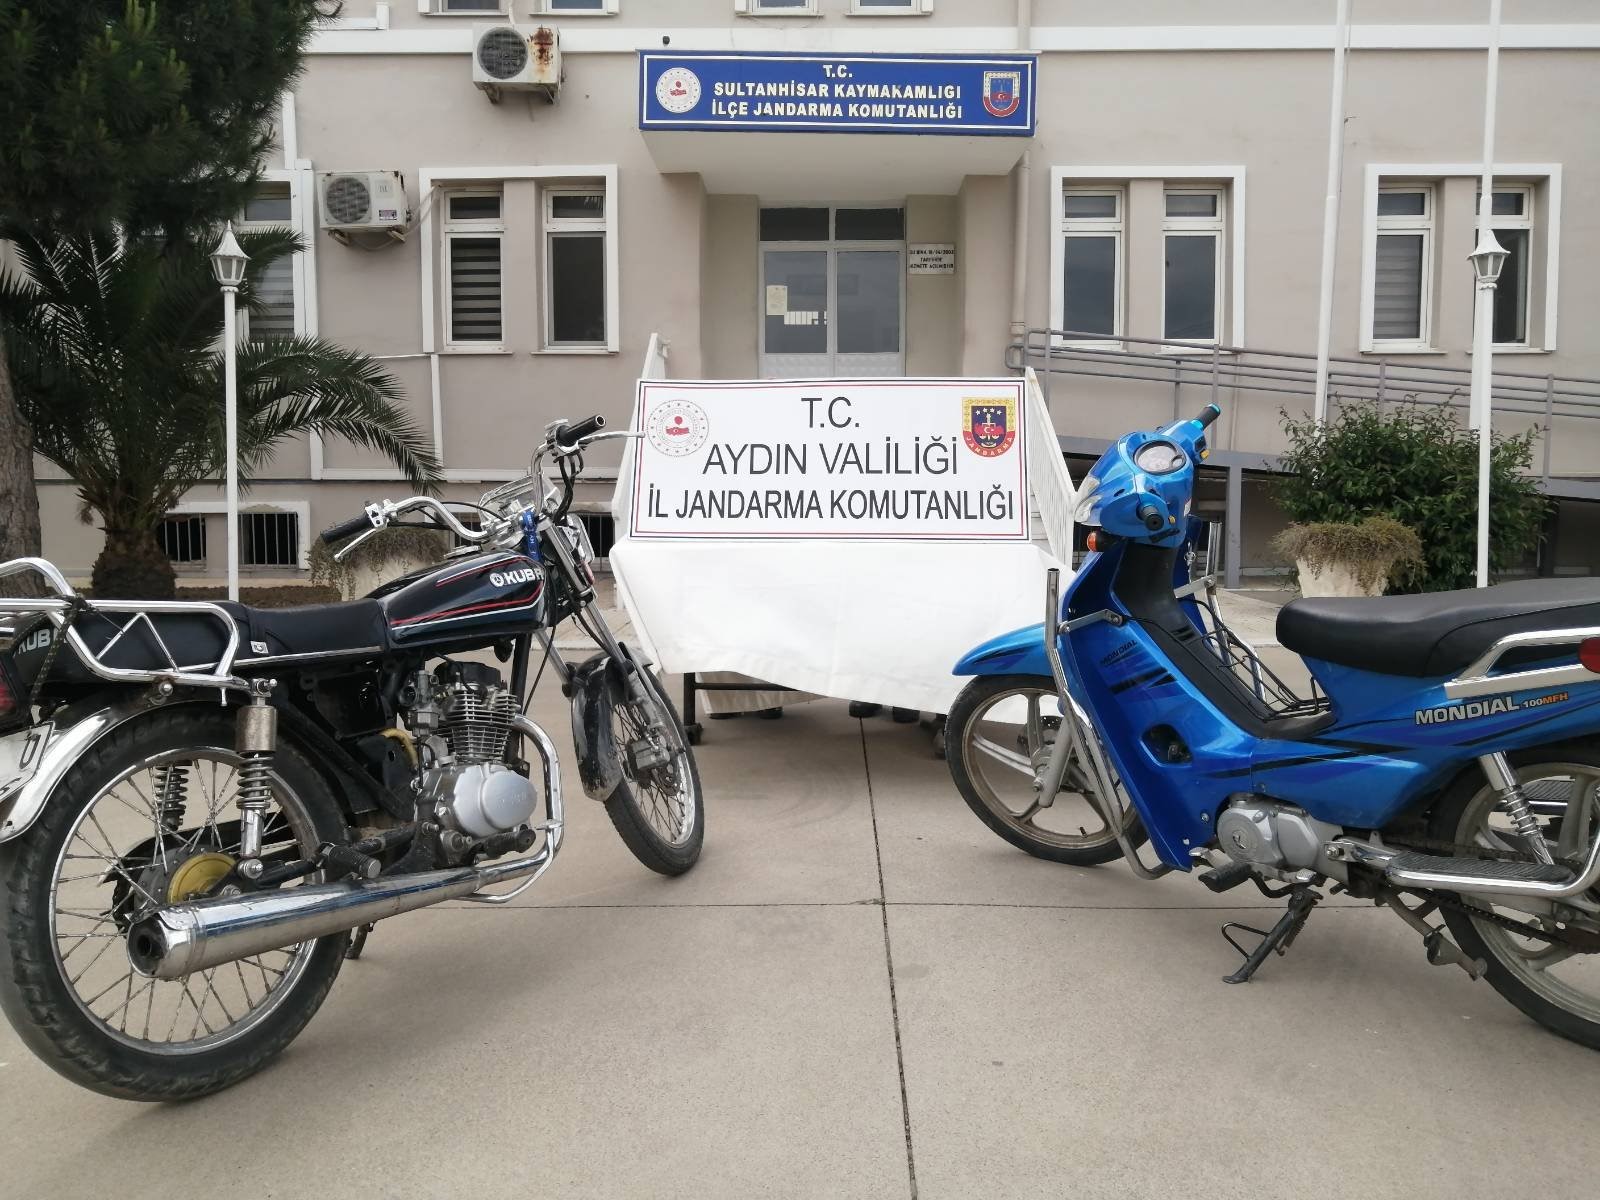 Sultanhisar Operasyonunda 2 Motosiklet Ele Geçirildi